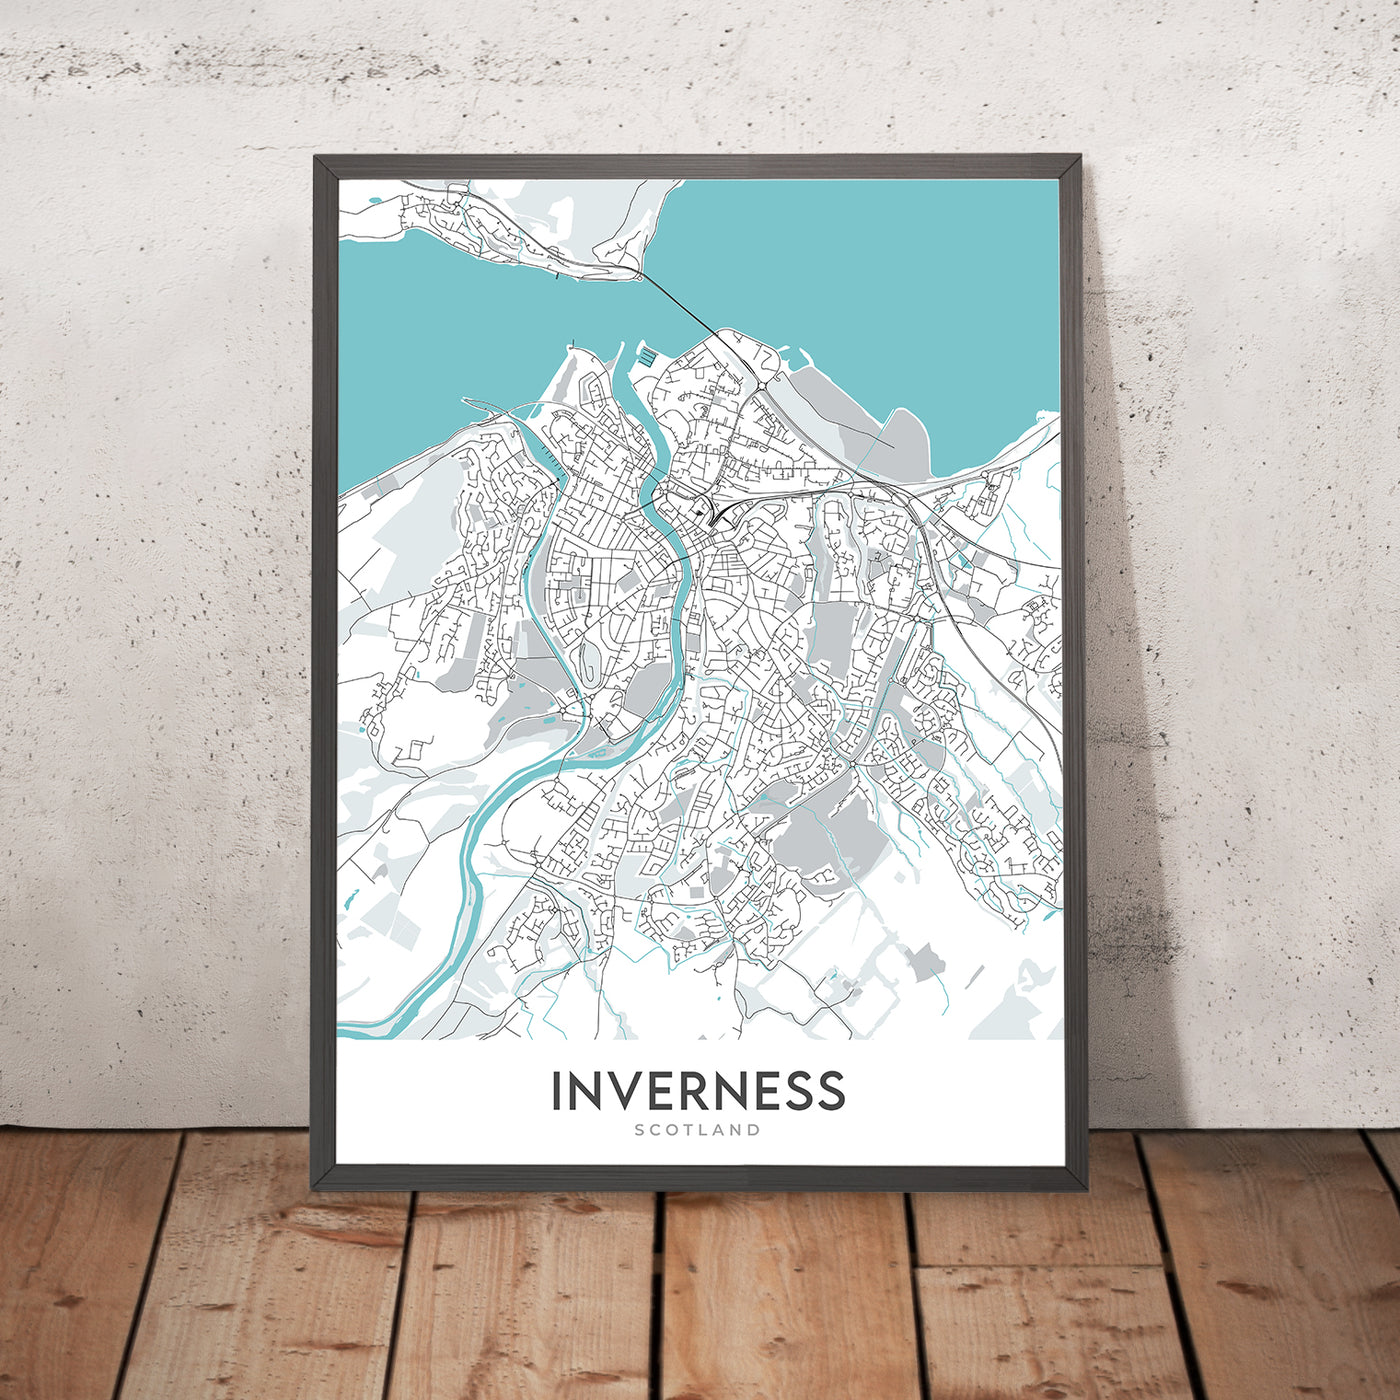 Plan de la ville moderne d'Inverness, Écosse : centre-ville, rivière Ness, A82, château d'Inverness, îles Ness